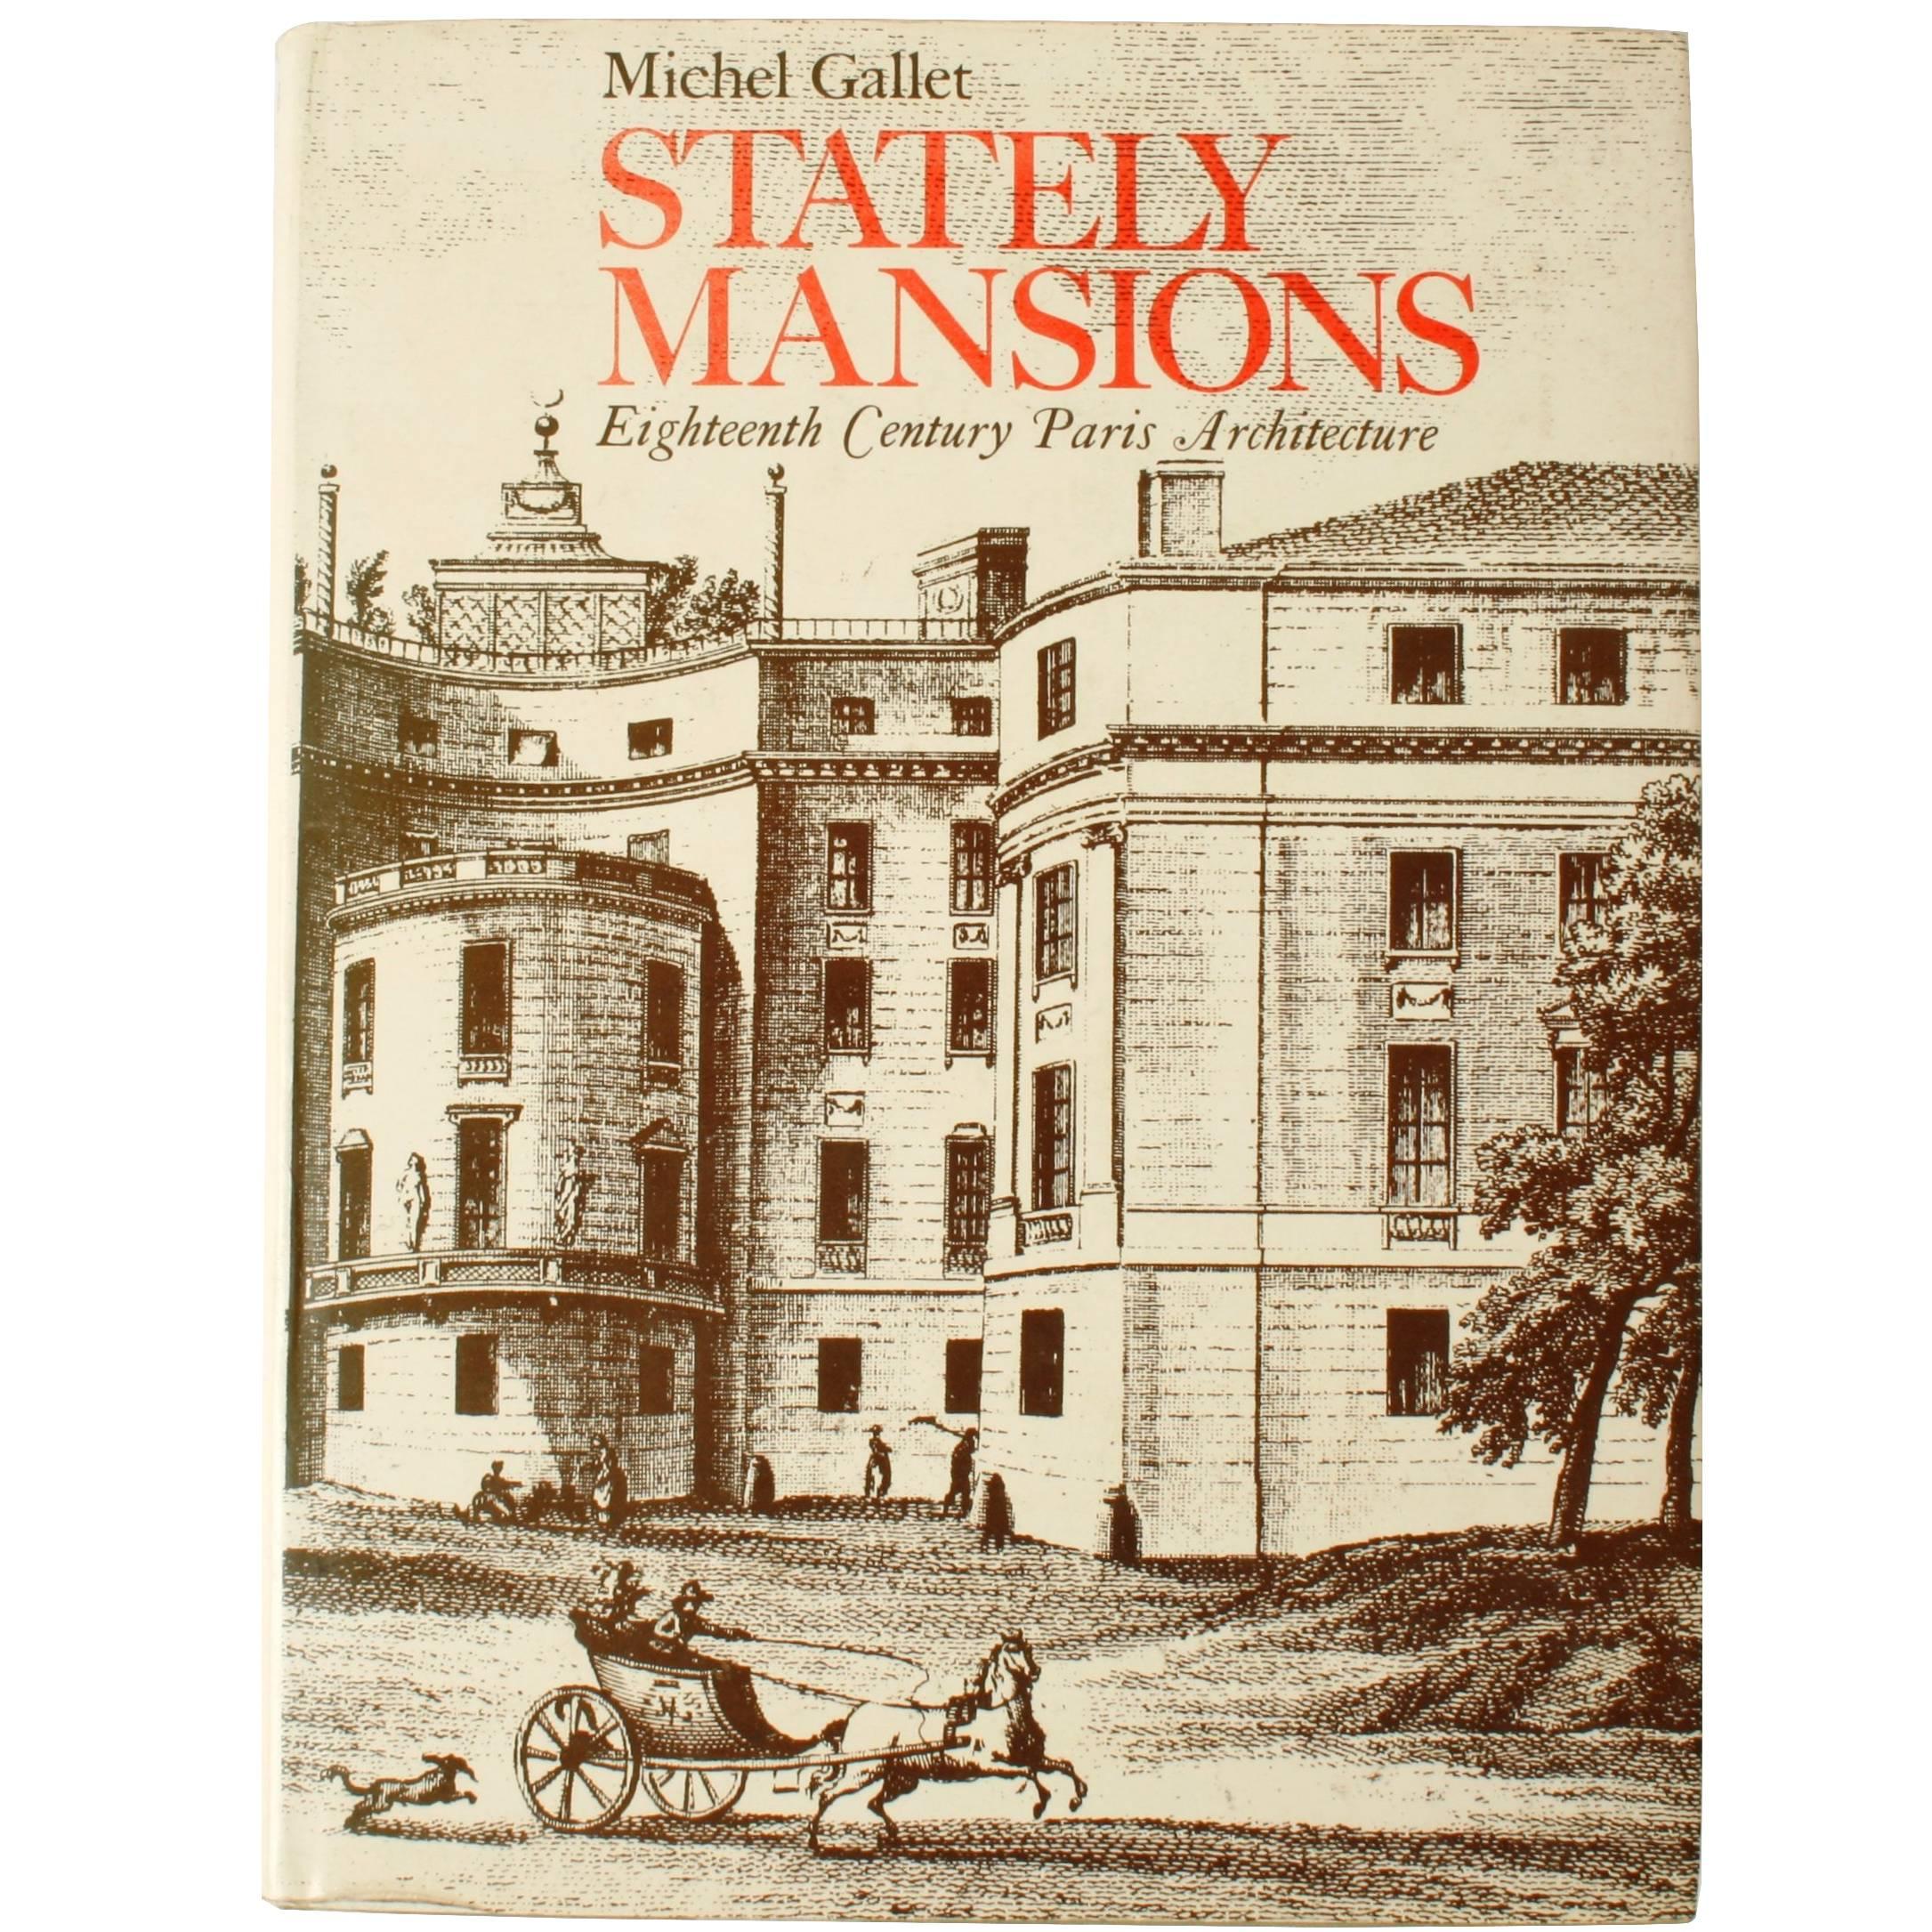 Maisons majestueuses, architecture parisienne du XVIIIe siècle, première édition en vente